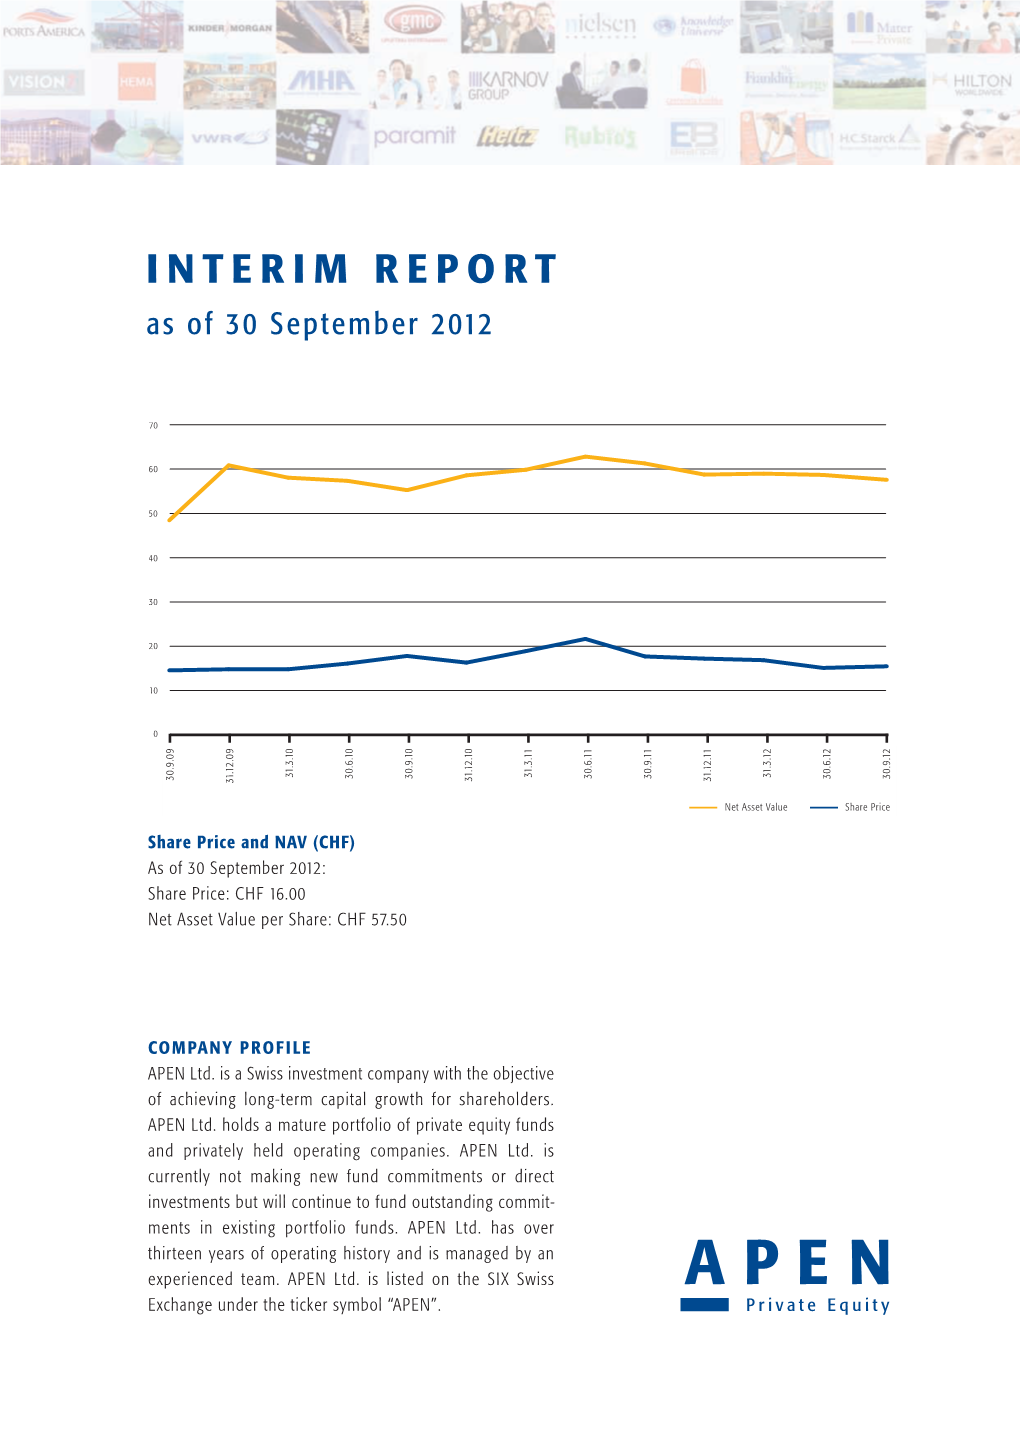 INTERIM REPORT As of 30 September 2012 2 2 1 1 2 1 1 0 0 0 0 9 9 1 1 1 1 1 1 1 1 1 1 1 0 0